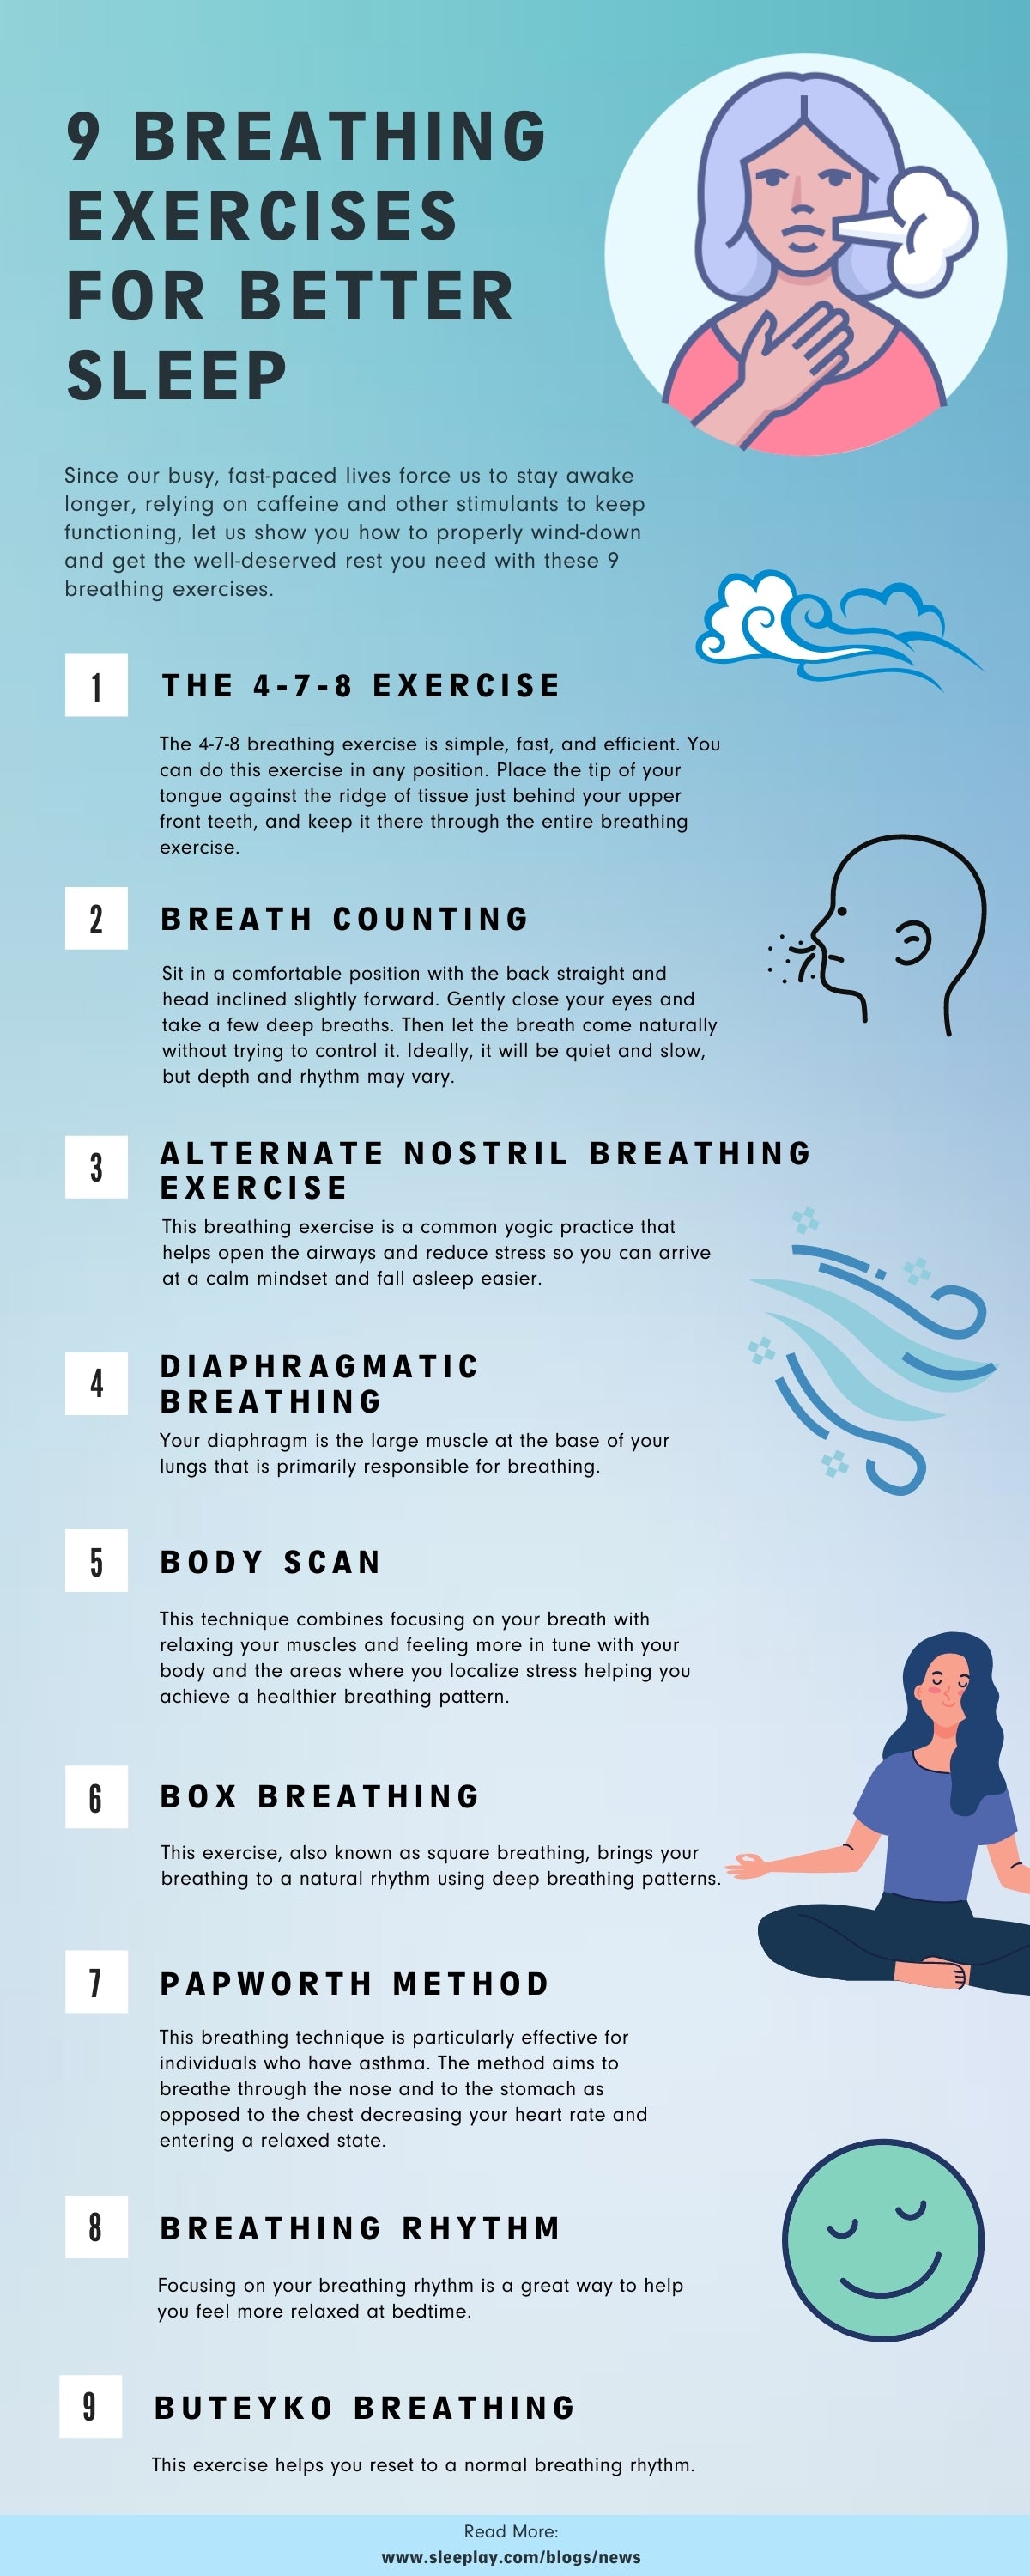 7 Breathing Exercises for Better Sleep